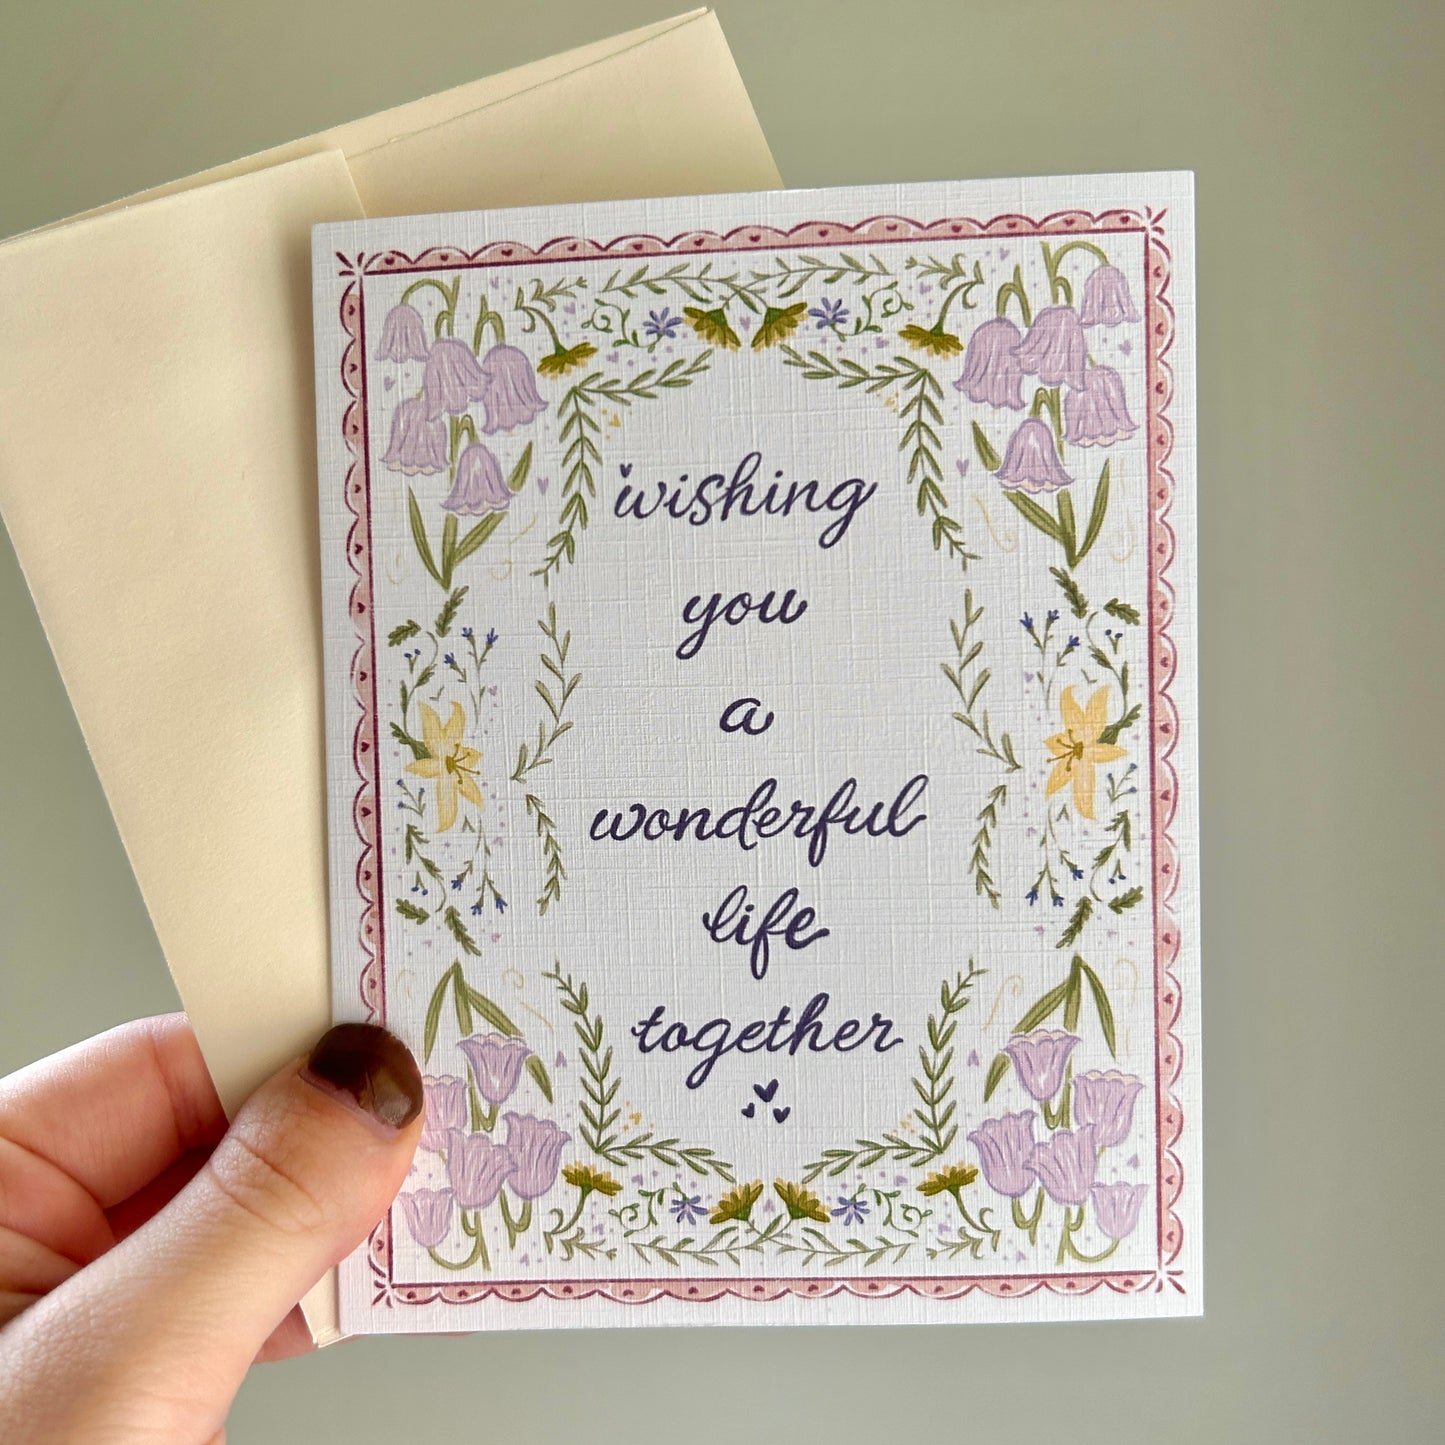 Wedding Card - “A Wonderful Life Together”